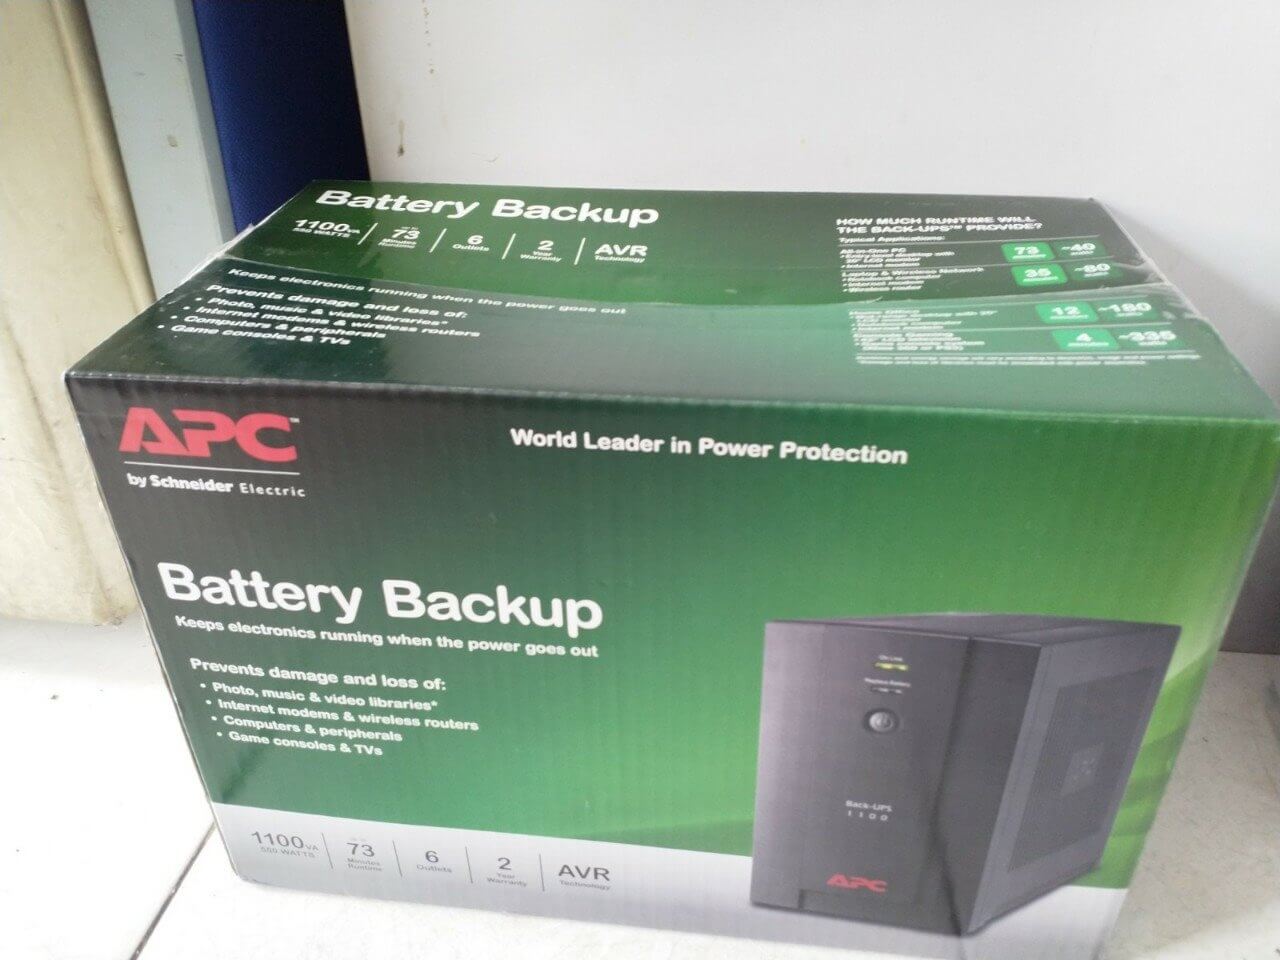 Bộ Lưu Điện : APC Back-UPS 1100VA, 230V, AVR, Universal and IEC Sockets - BX1100LI-MS